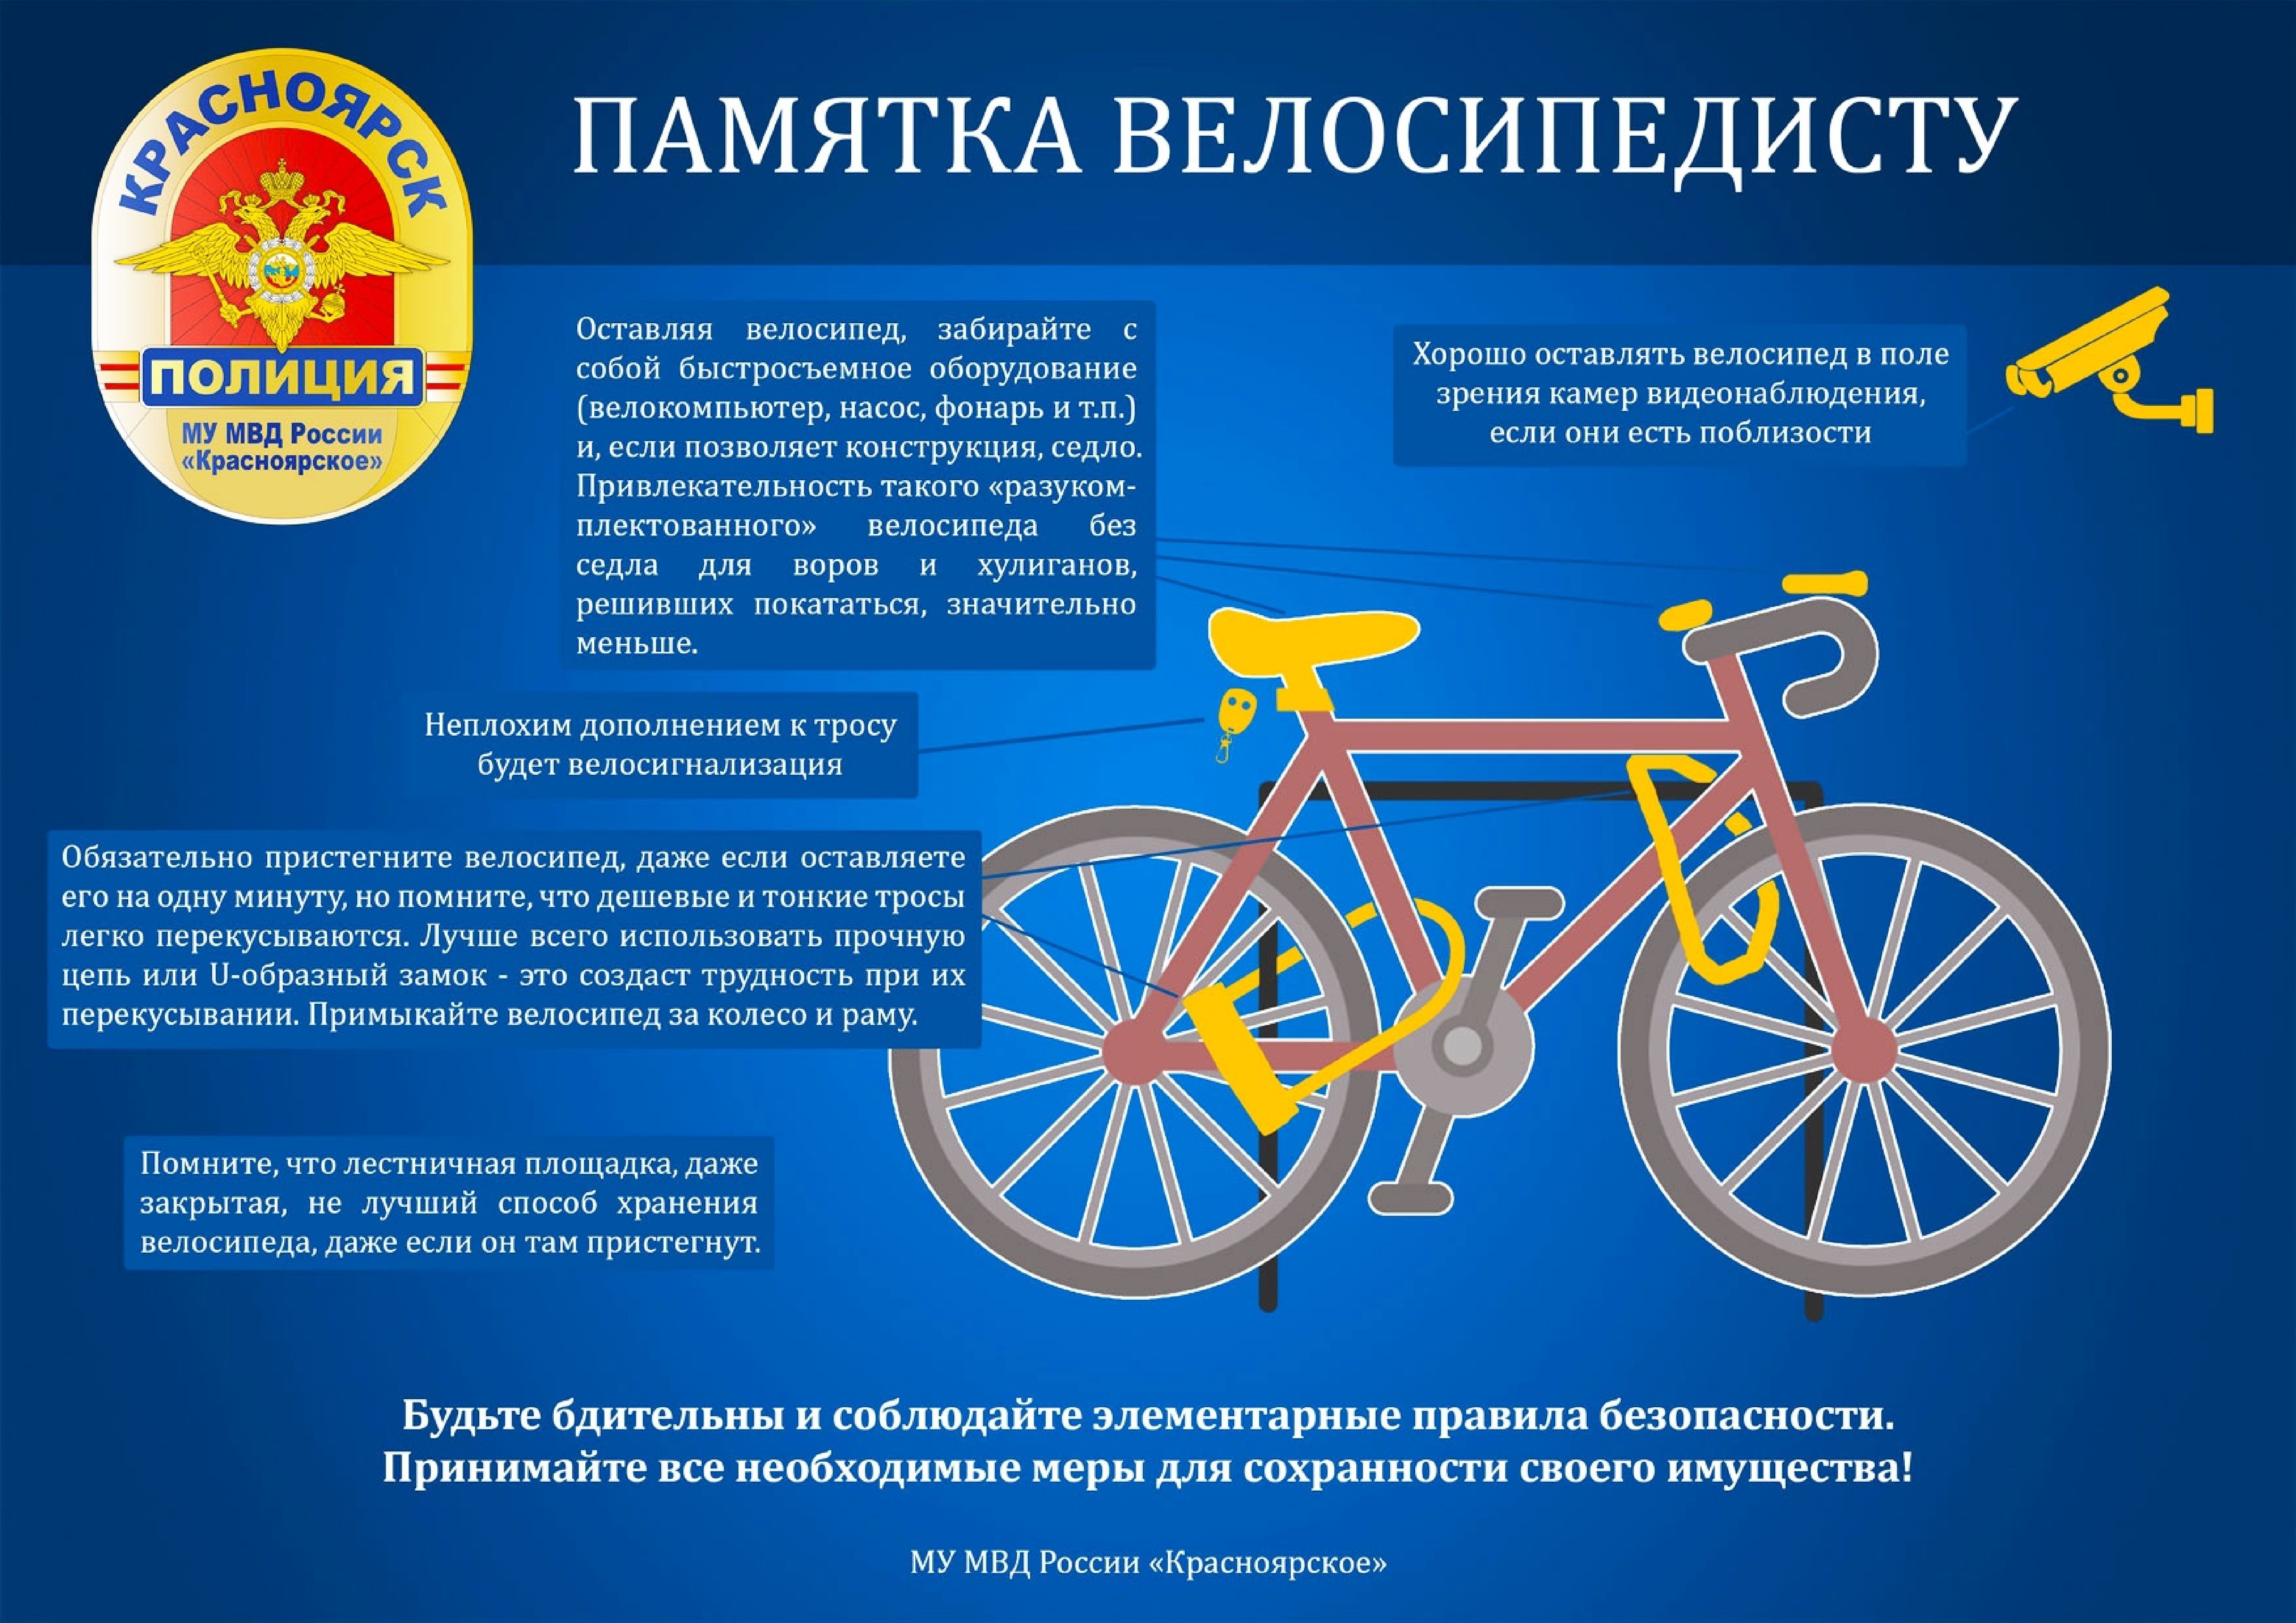 - Полиция предупреждает: памятка велосипедисту